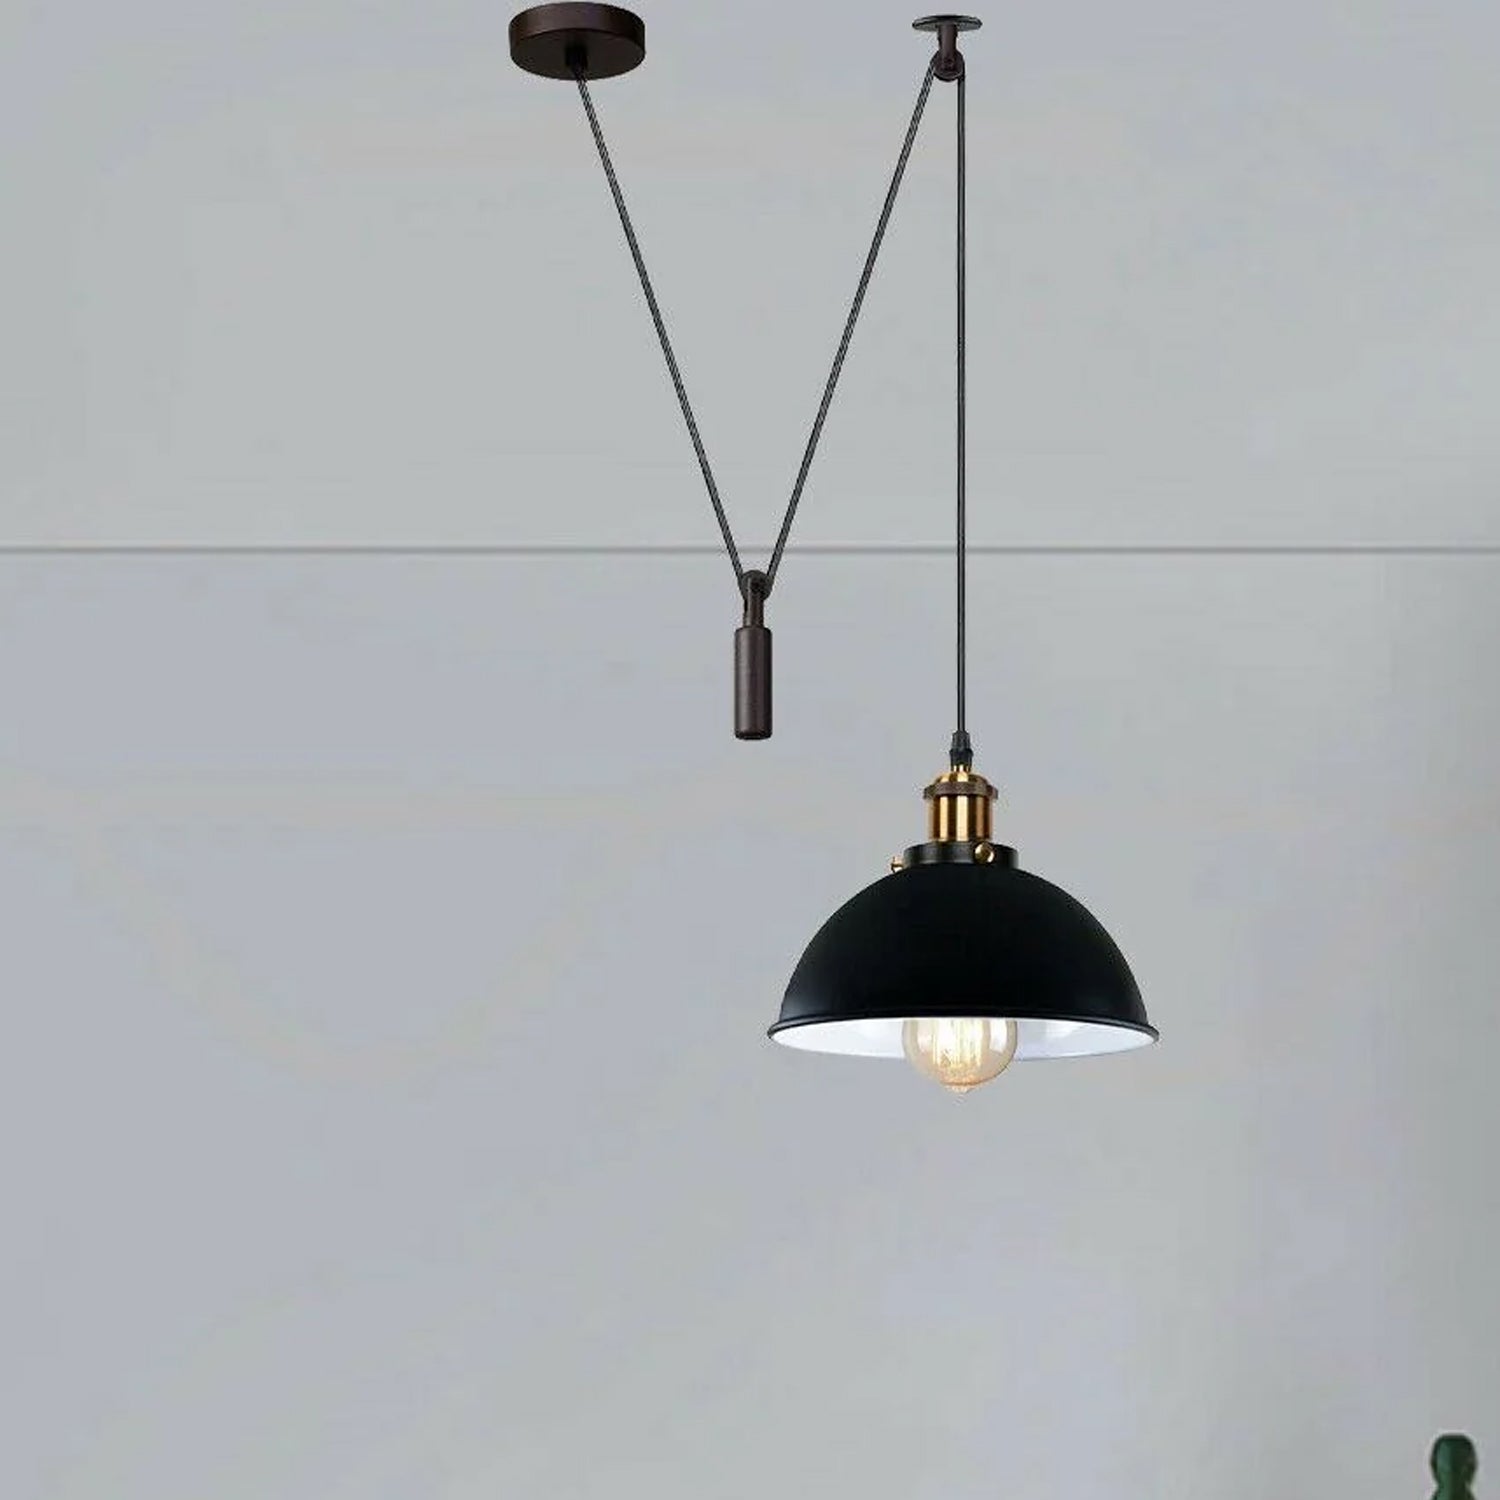 Retro Loft Adjustable Antique Metallic Pendant Ceiling Light